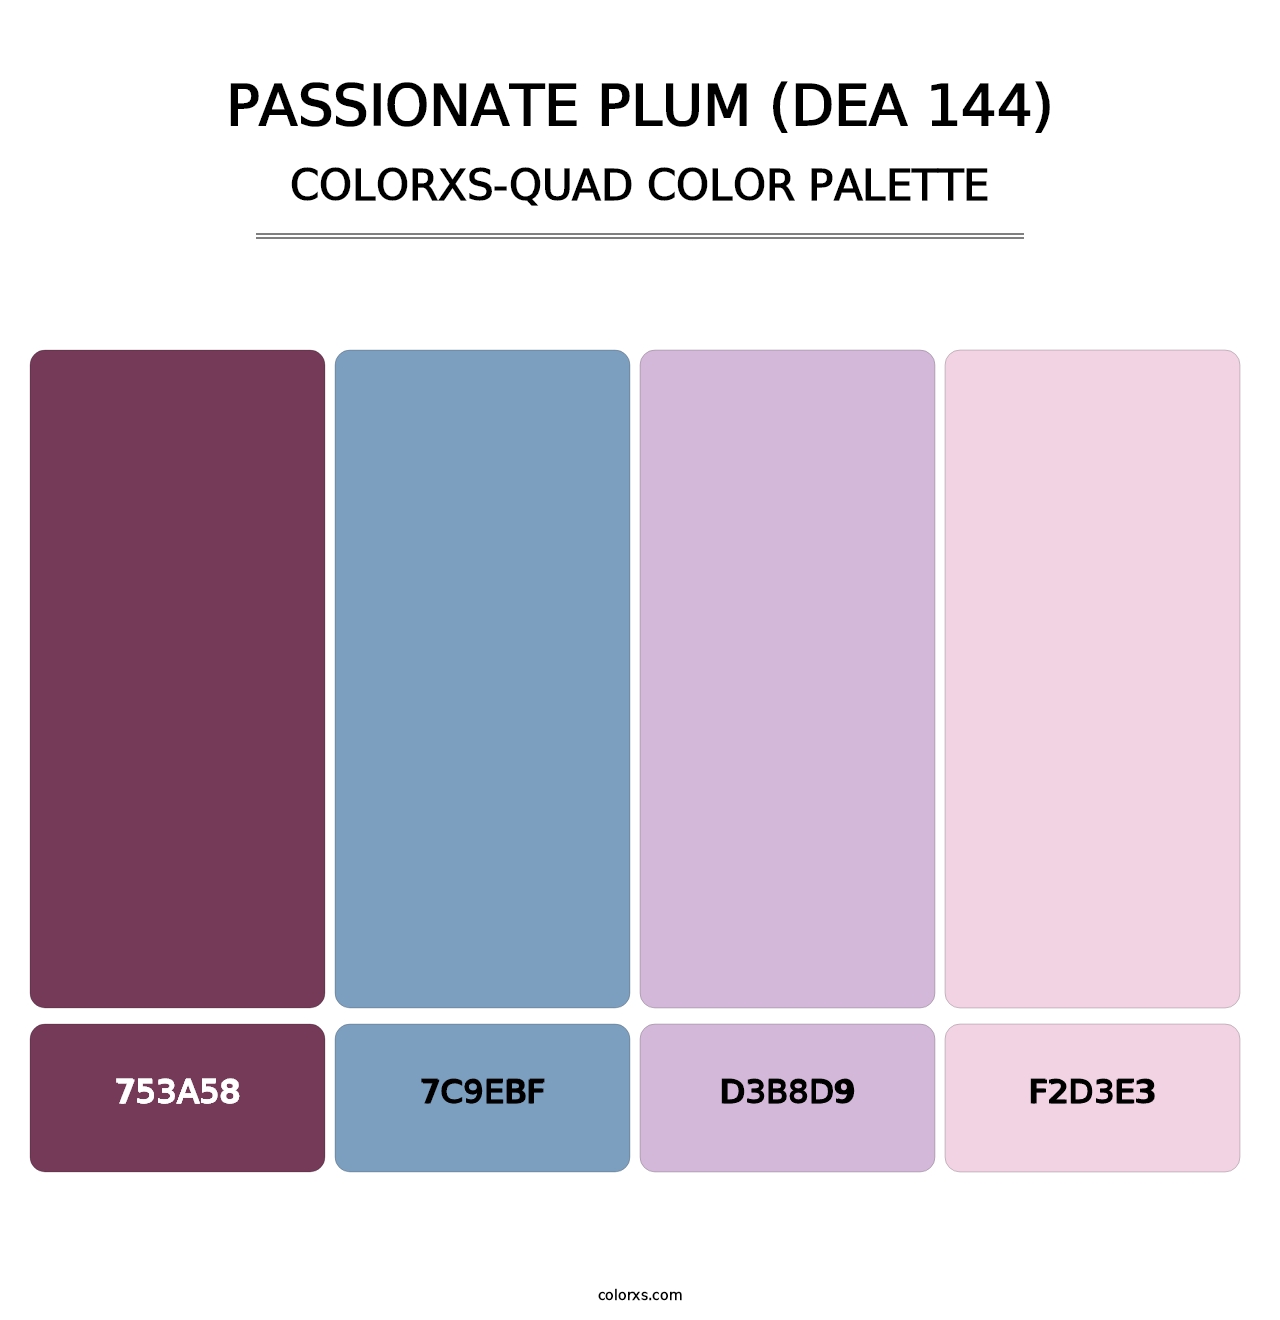 Passionate Plum (DEA 144) - Colorxs Quad Palette